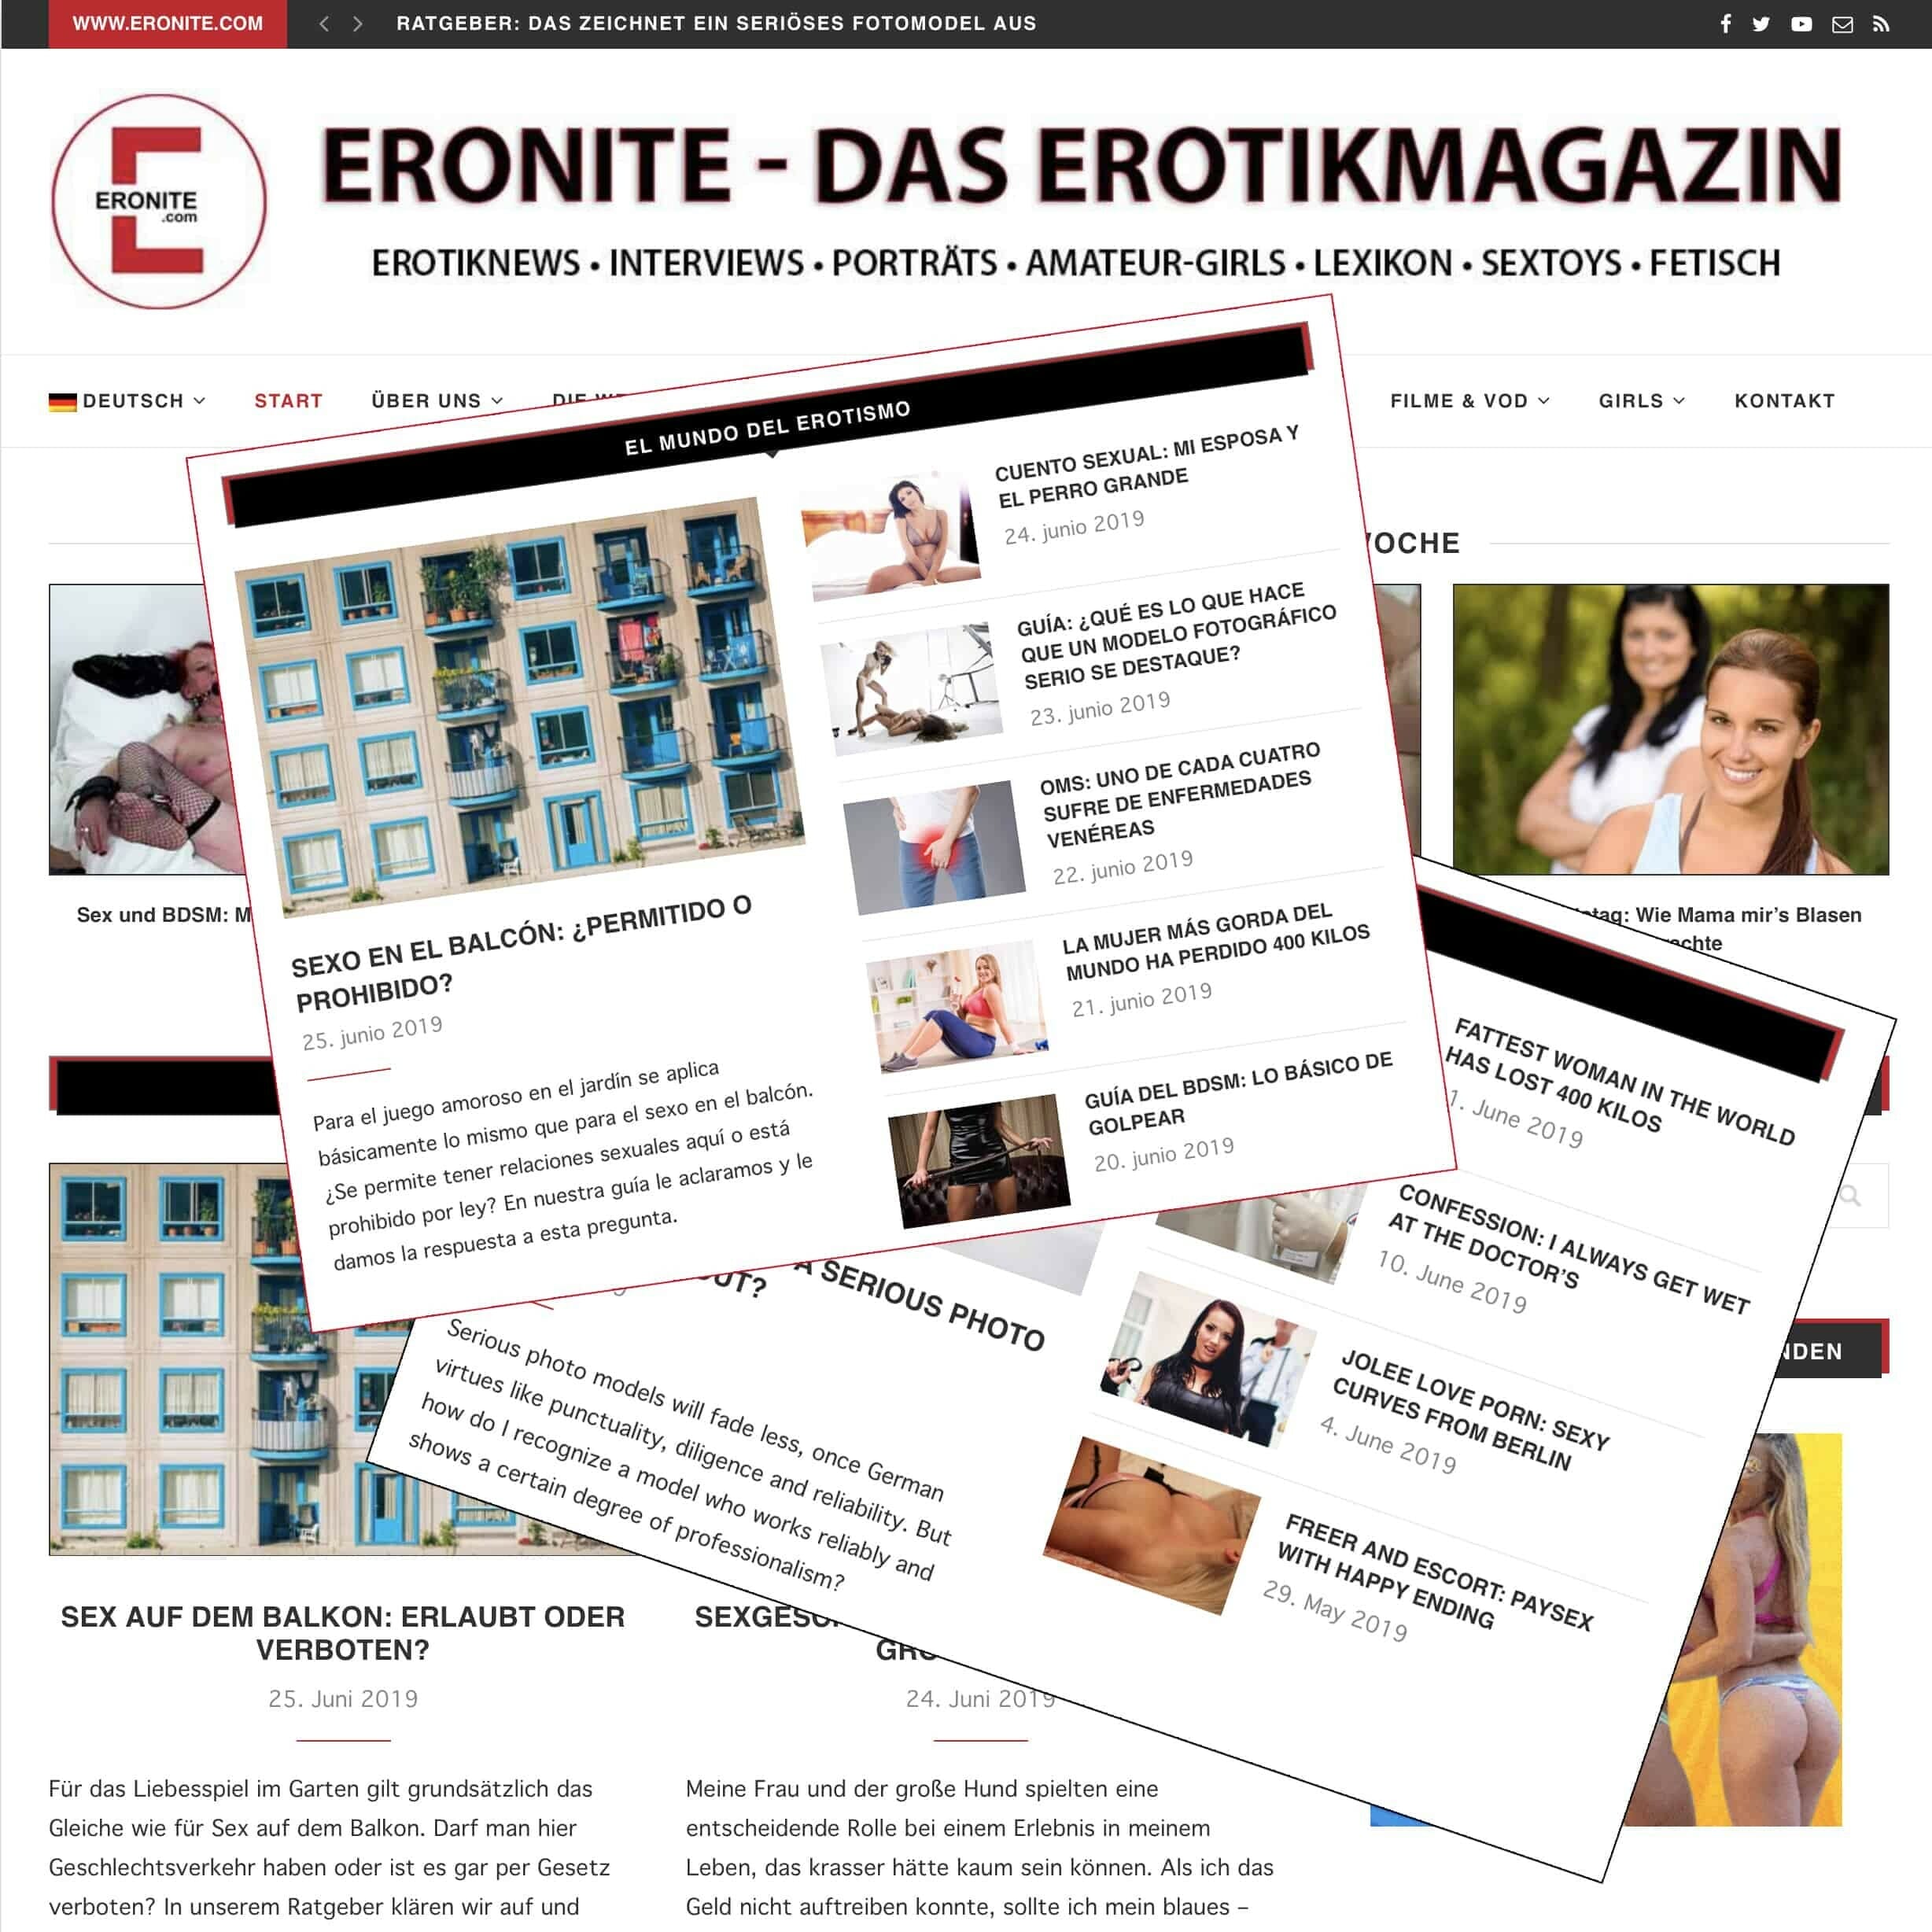 Erotiknews von Eronite jetzt in drei Sprachen Das Erotikmagazin